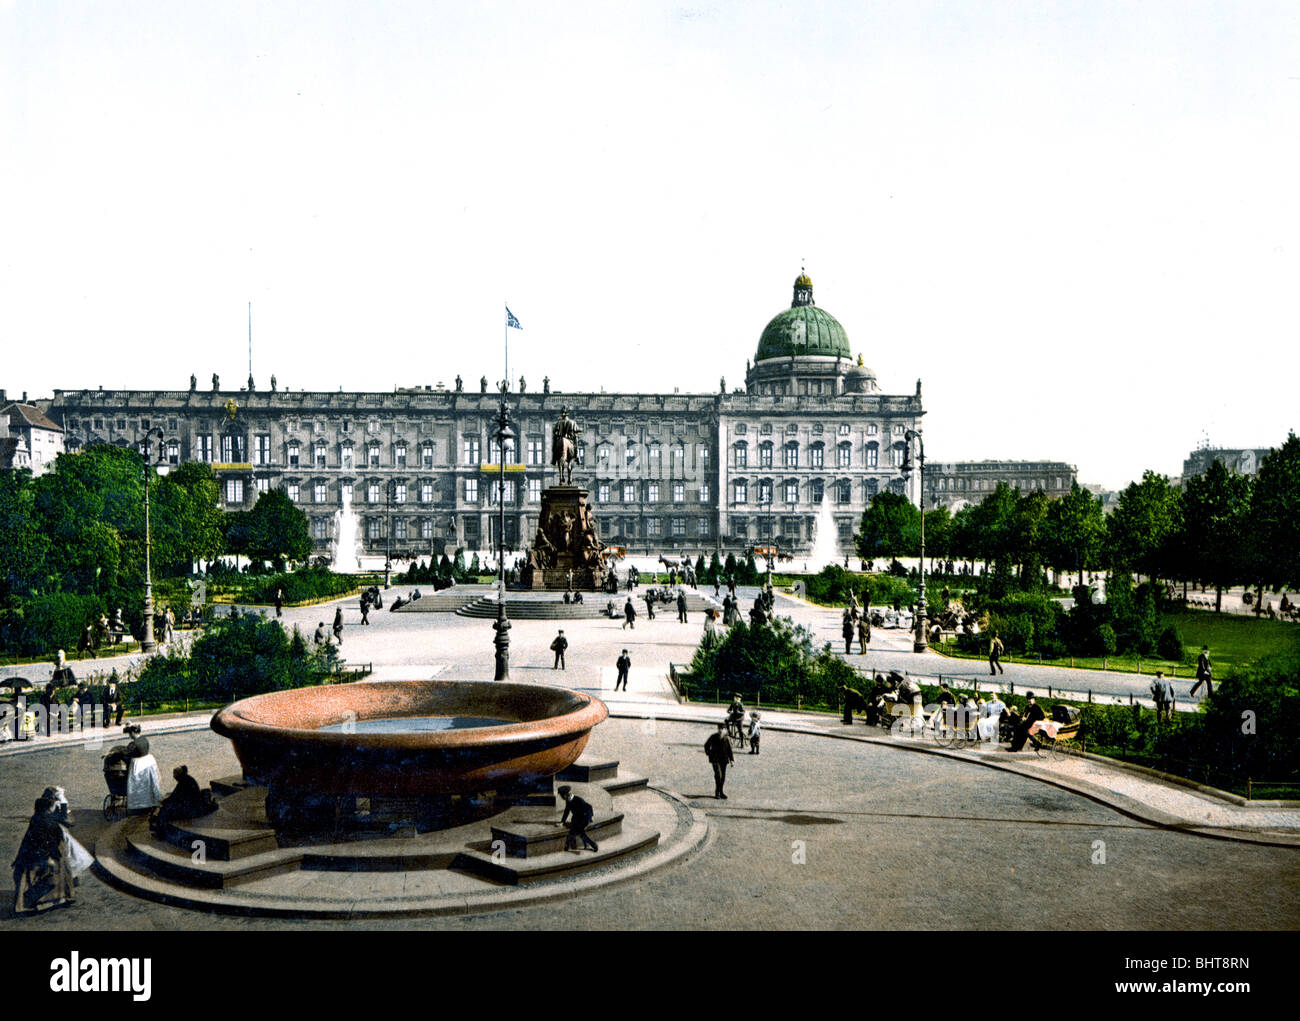 Königlicher Palast und Berlín Lustgarten Foto de stock